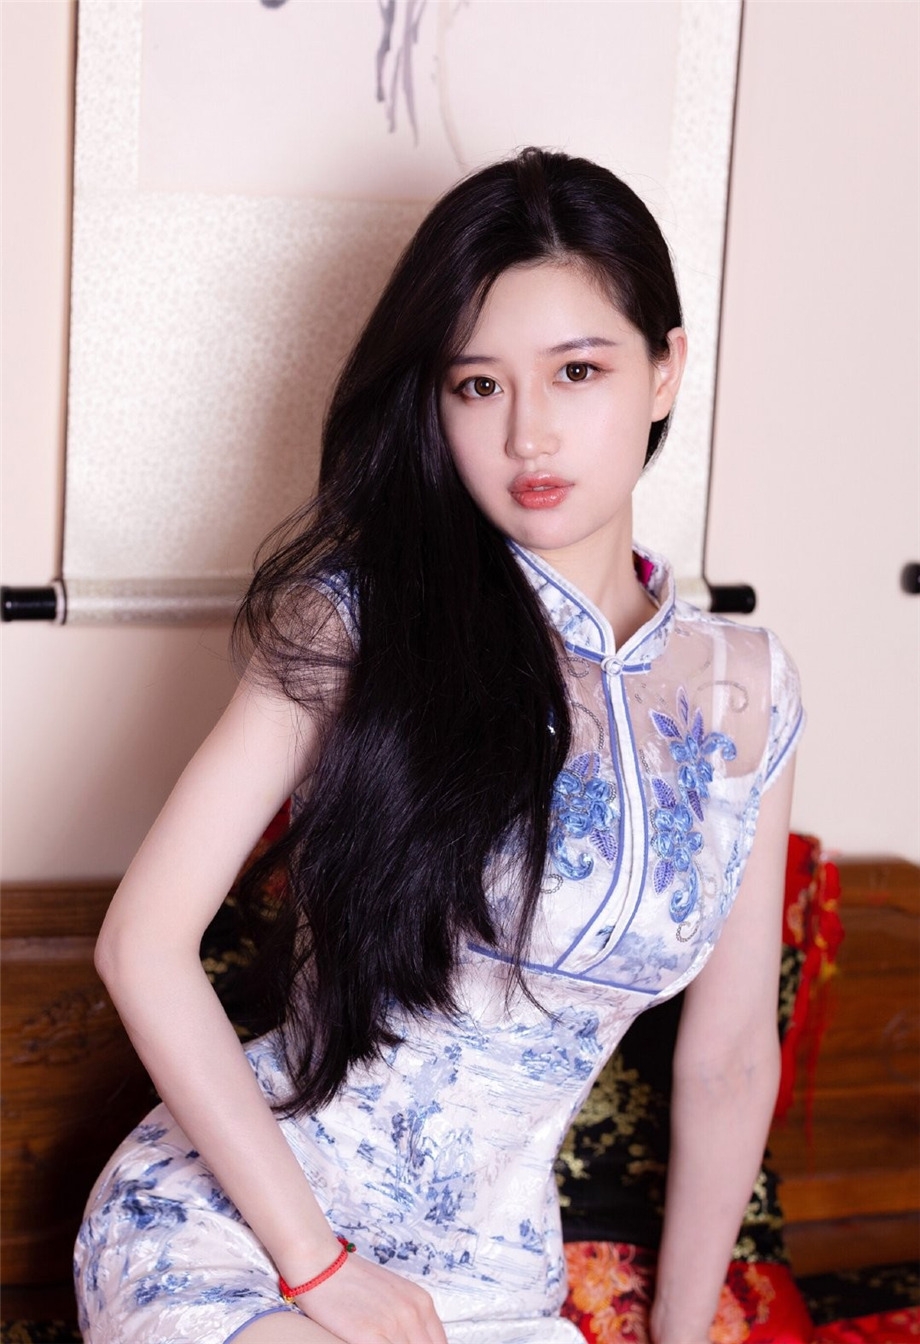 年轻的阿姨极品好身材凹凸有致迷人韩国极品美女写真